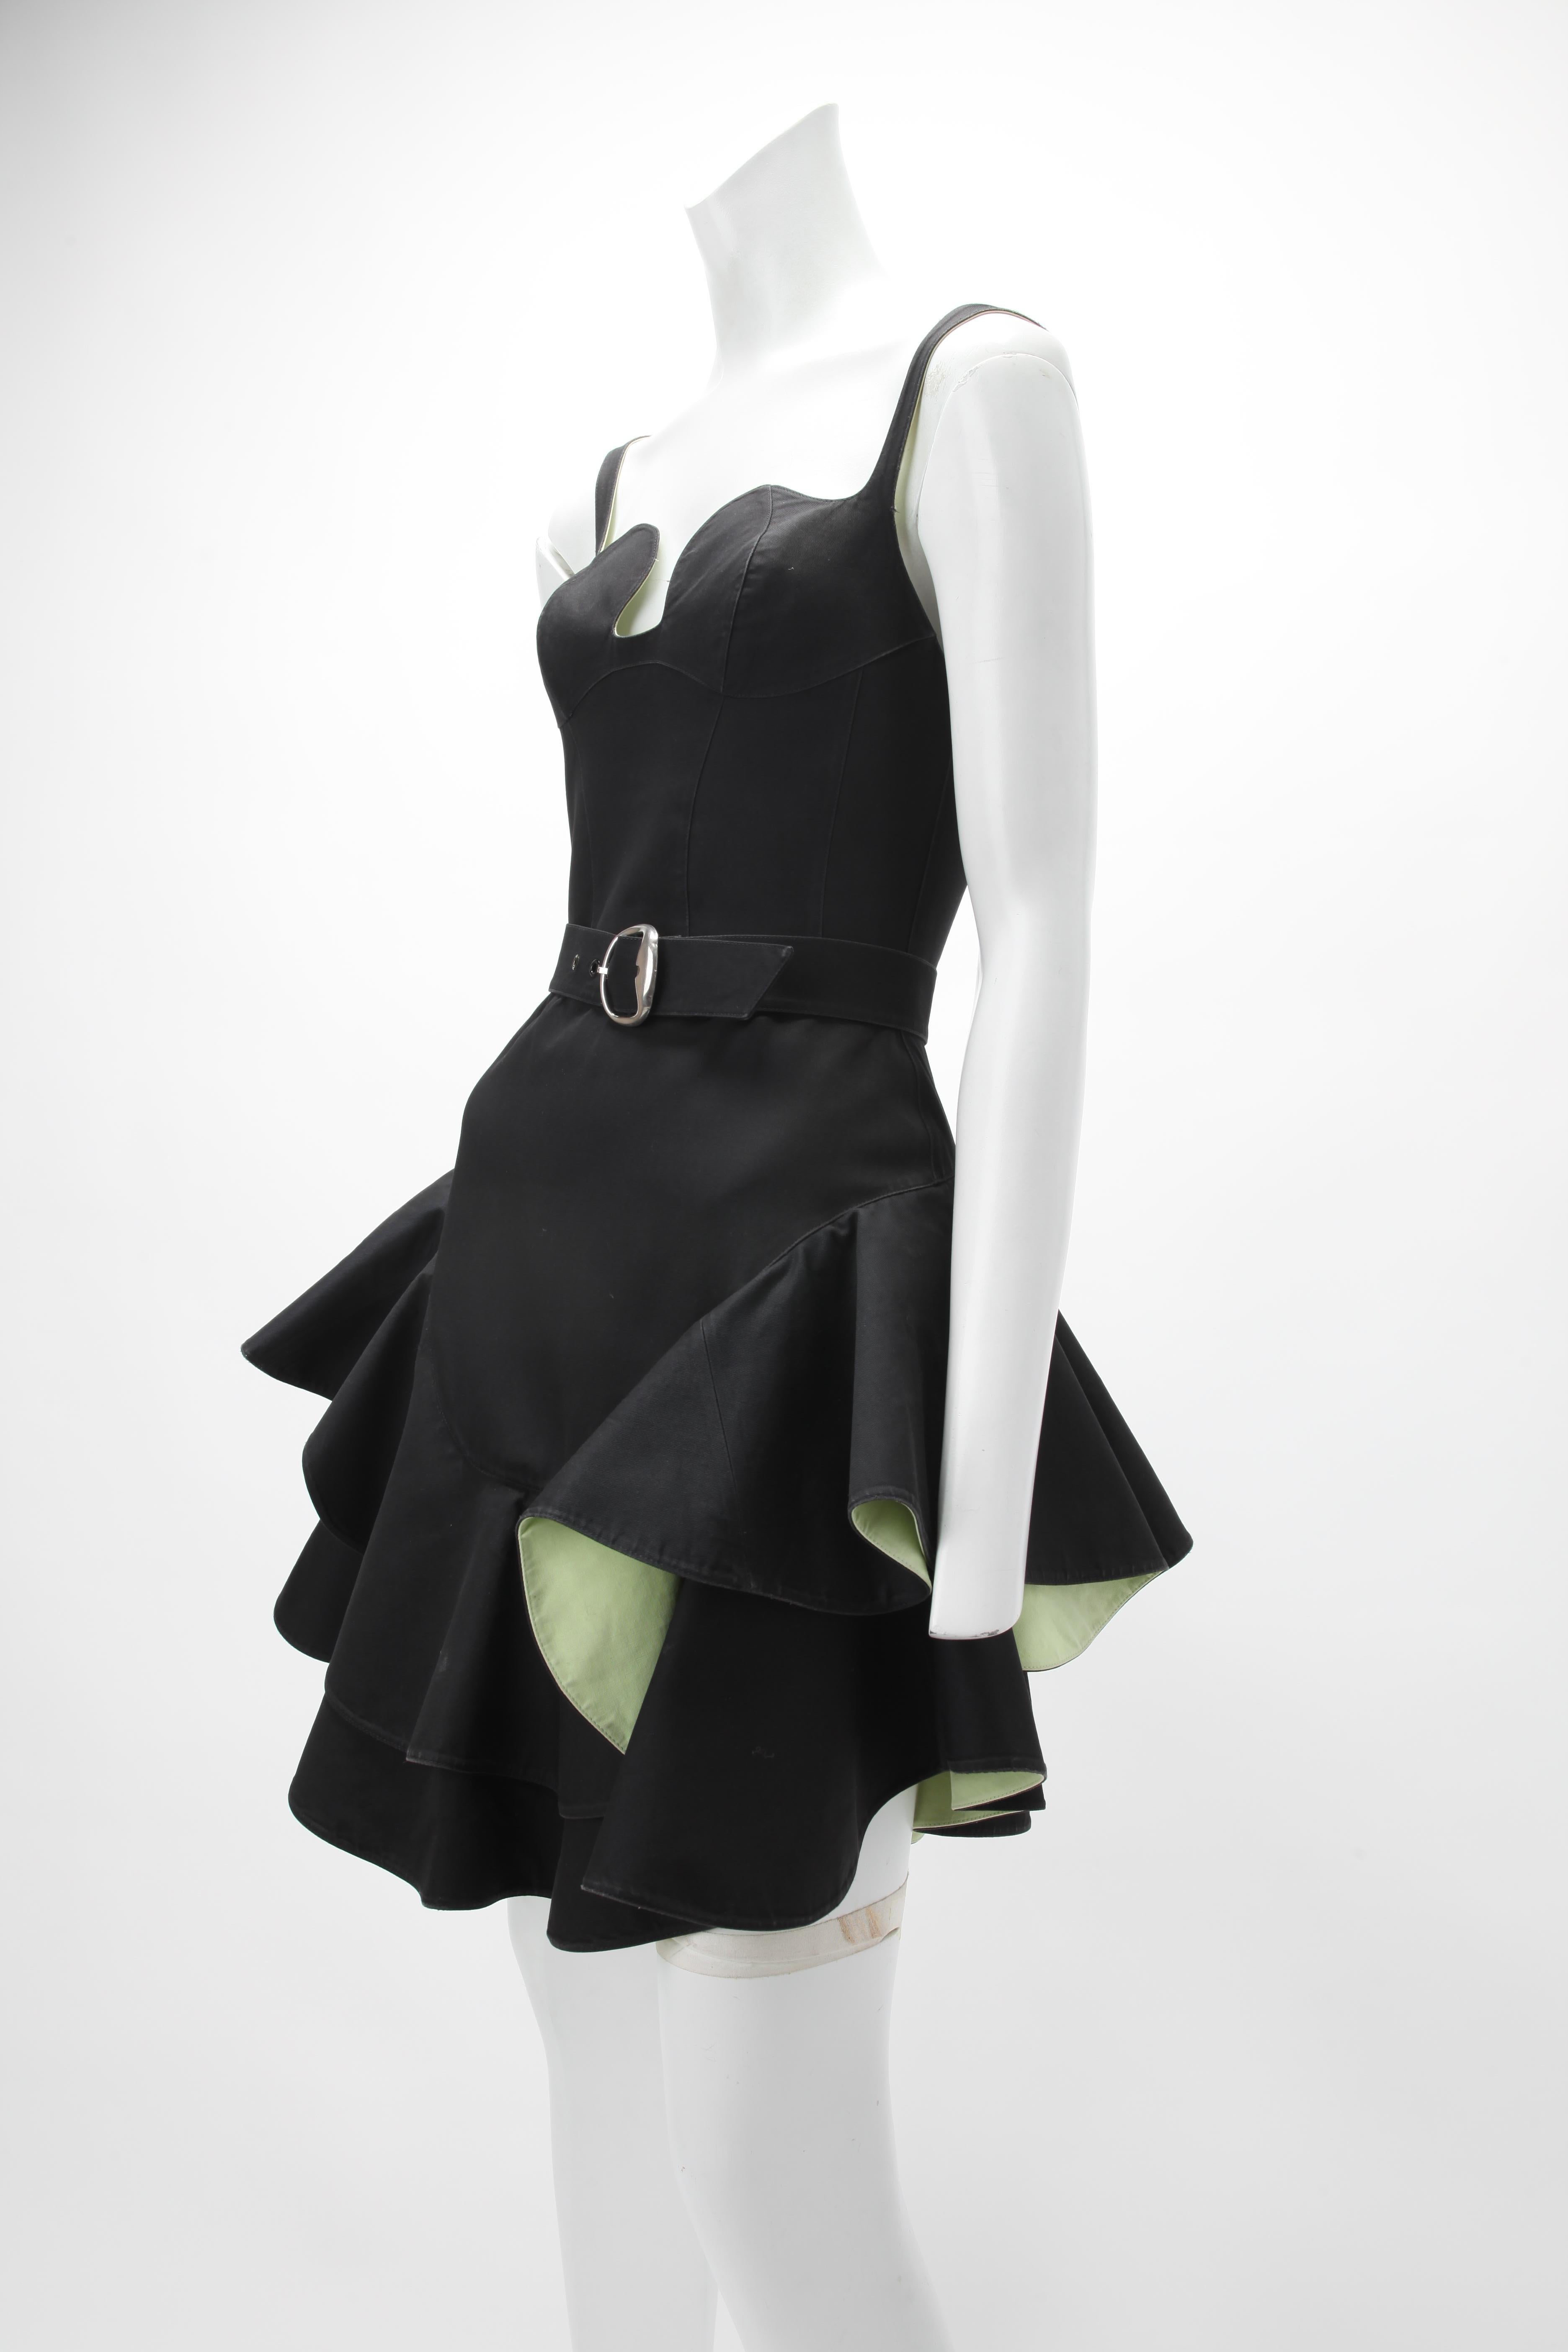 S/S 1990 Thierry Mugler Schwarzes Baumwollkleid mit mehrschichtigen, gestuften Rockteilen, die mit säuregrüner Baumwolle unterlegt sind; tailliertes Oberteil mit verstellbaren Trägern; eigener Gürtel mit silberfarbener Schnalle passend zu den